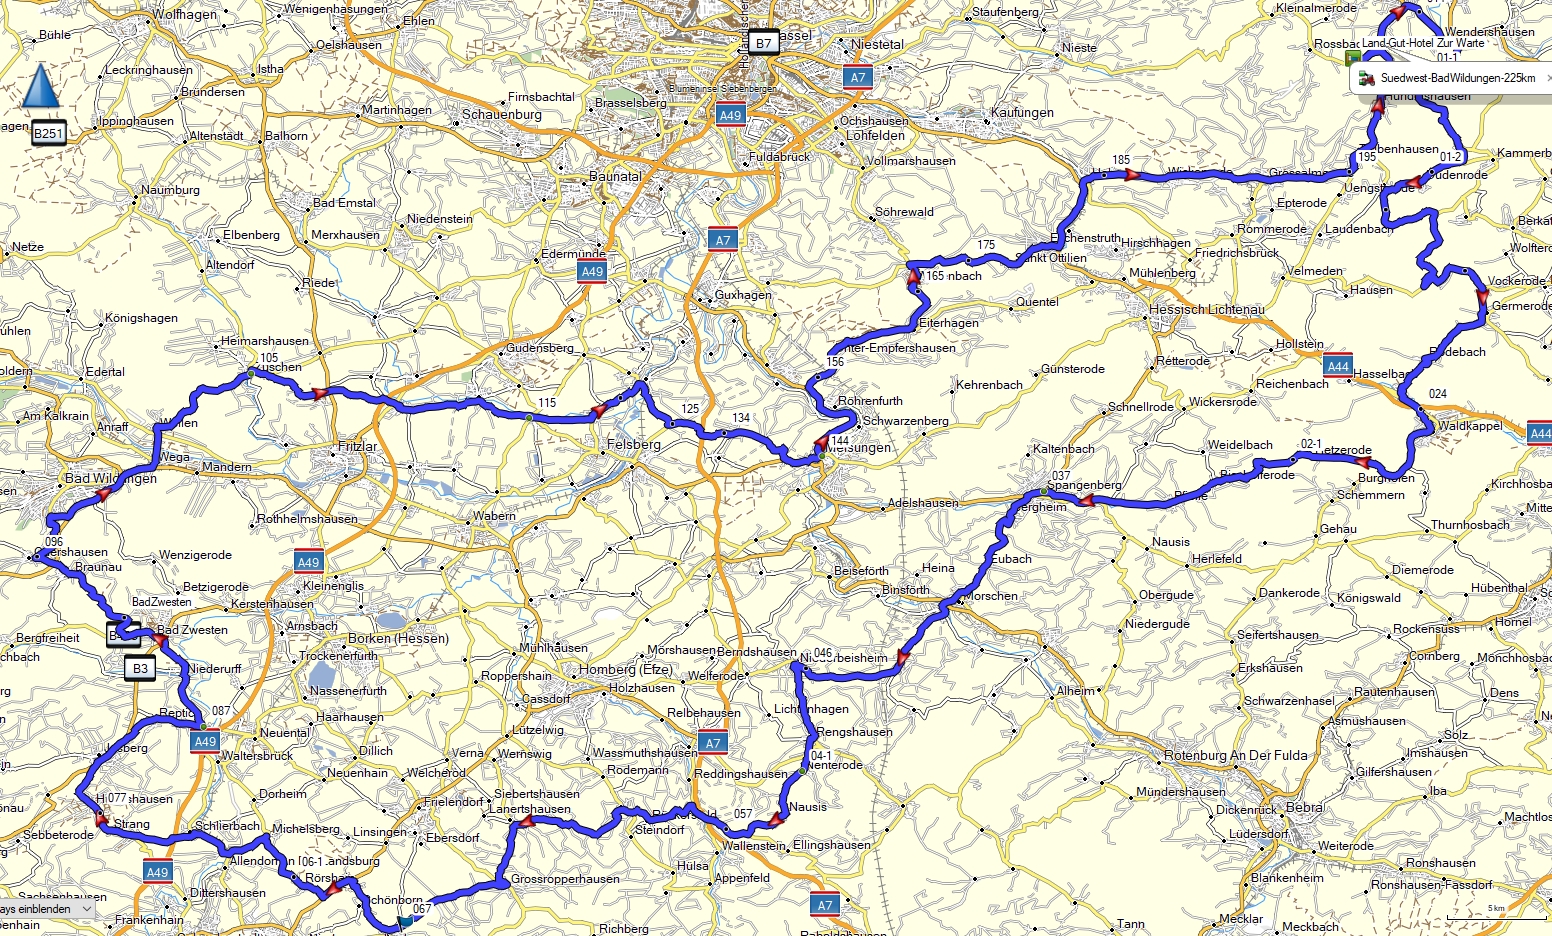 Suedwest-BadWildungen-255km